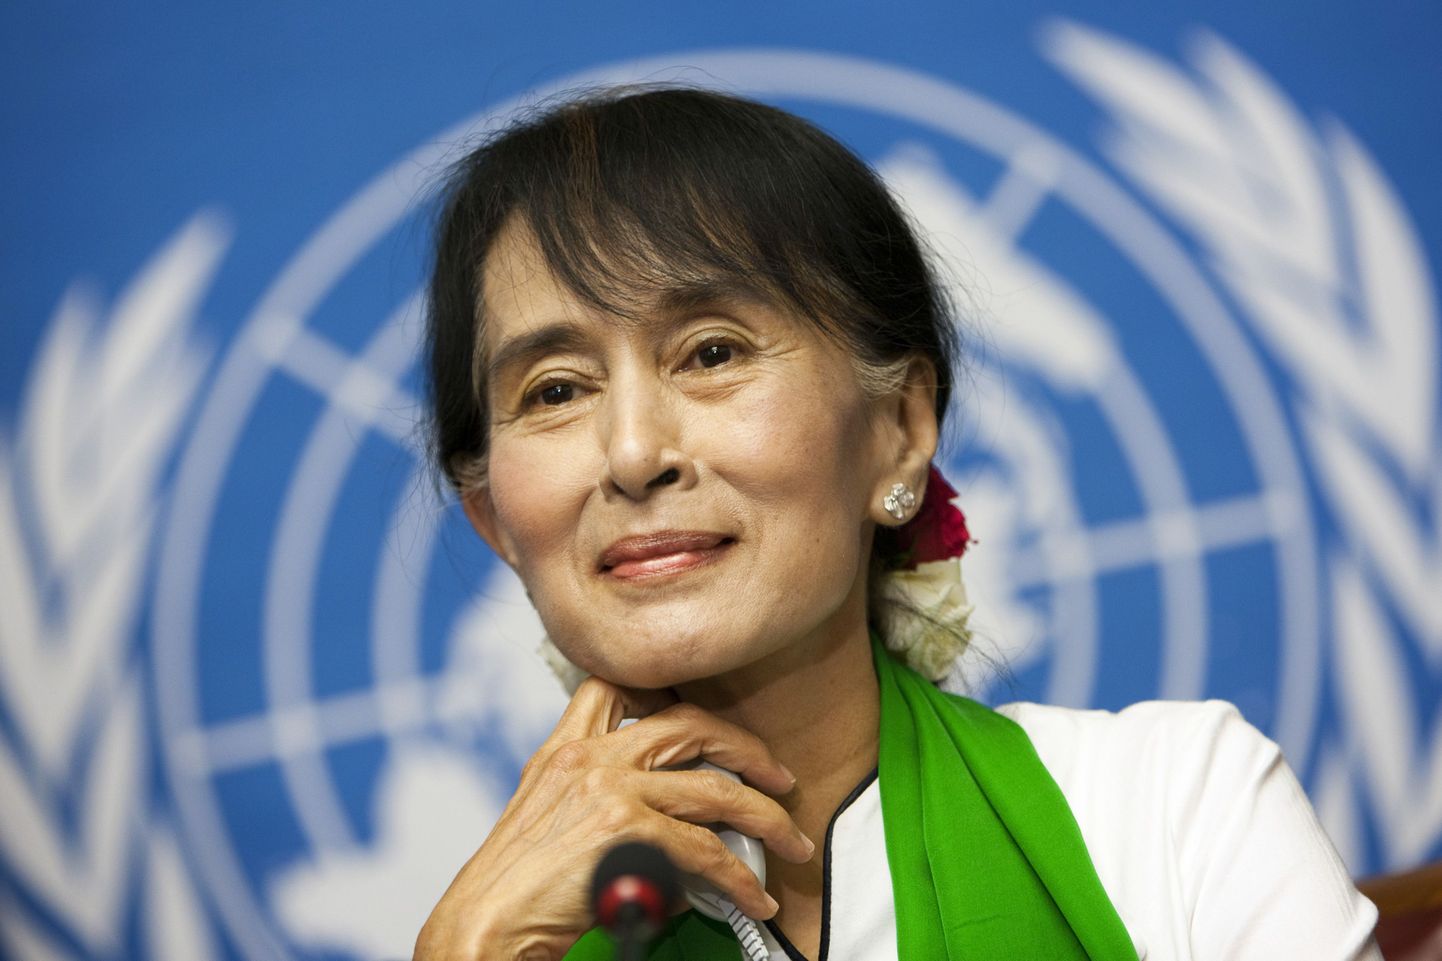 Birma opositsioonijuht Aung San Suu Kyi ÜRO pressikonverentsil Genfis 14. juunil